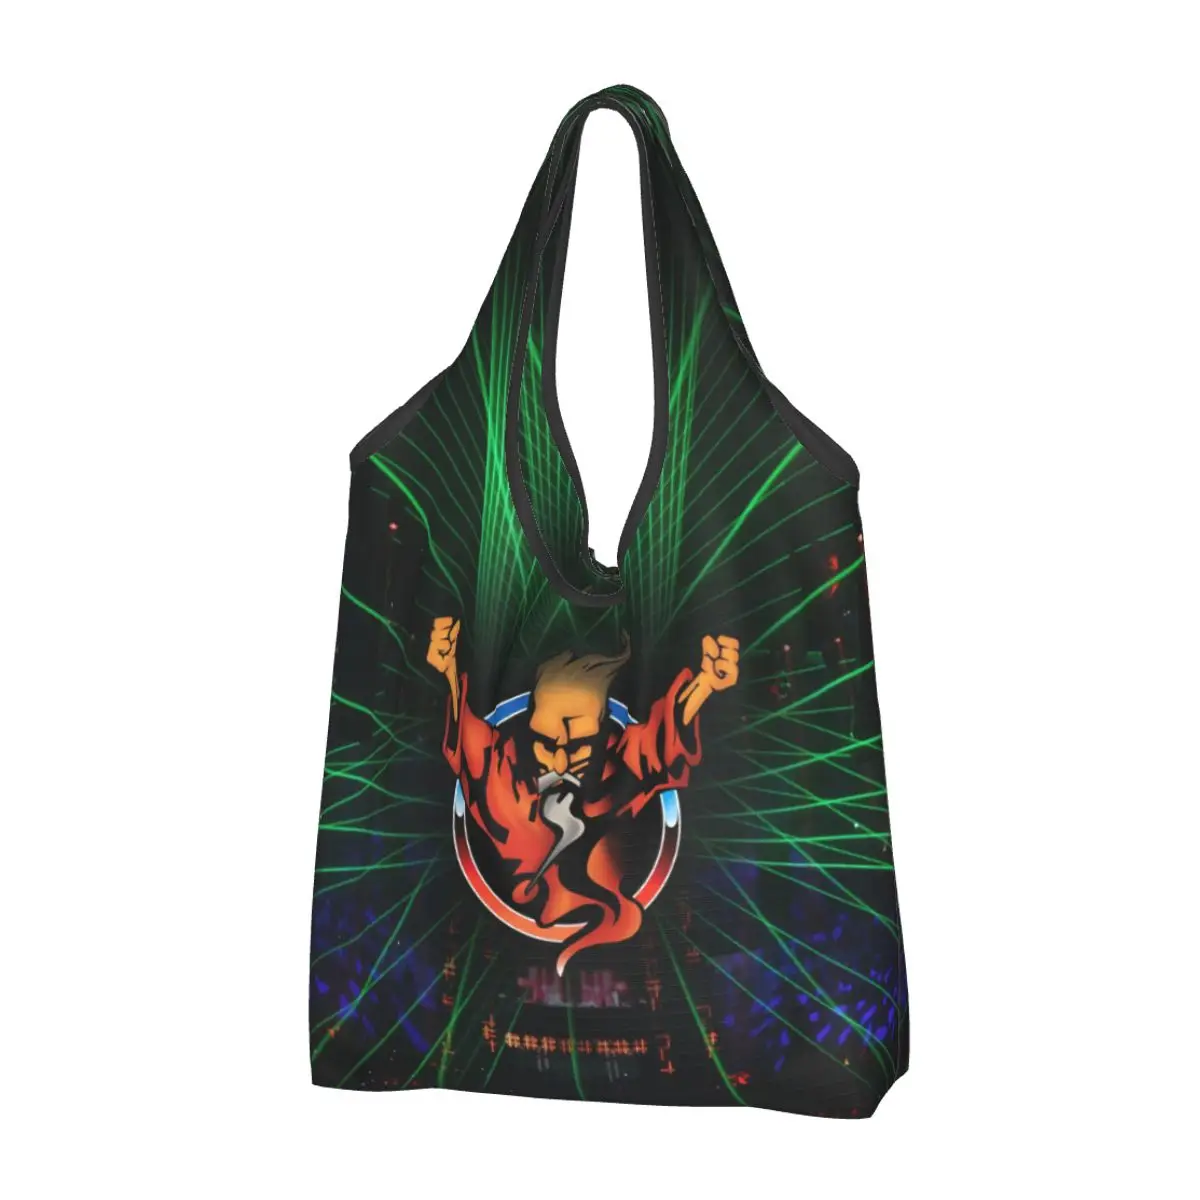 

Thunderdome музыкальный фестиваль продуктовая сумка для покупок Индивидуальная сумка-шоппер через плечо вместительная Портативная Сумка-футляр